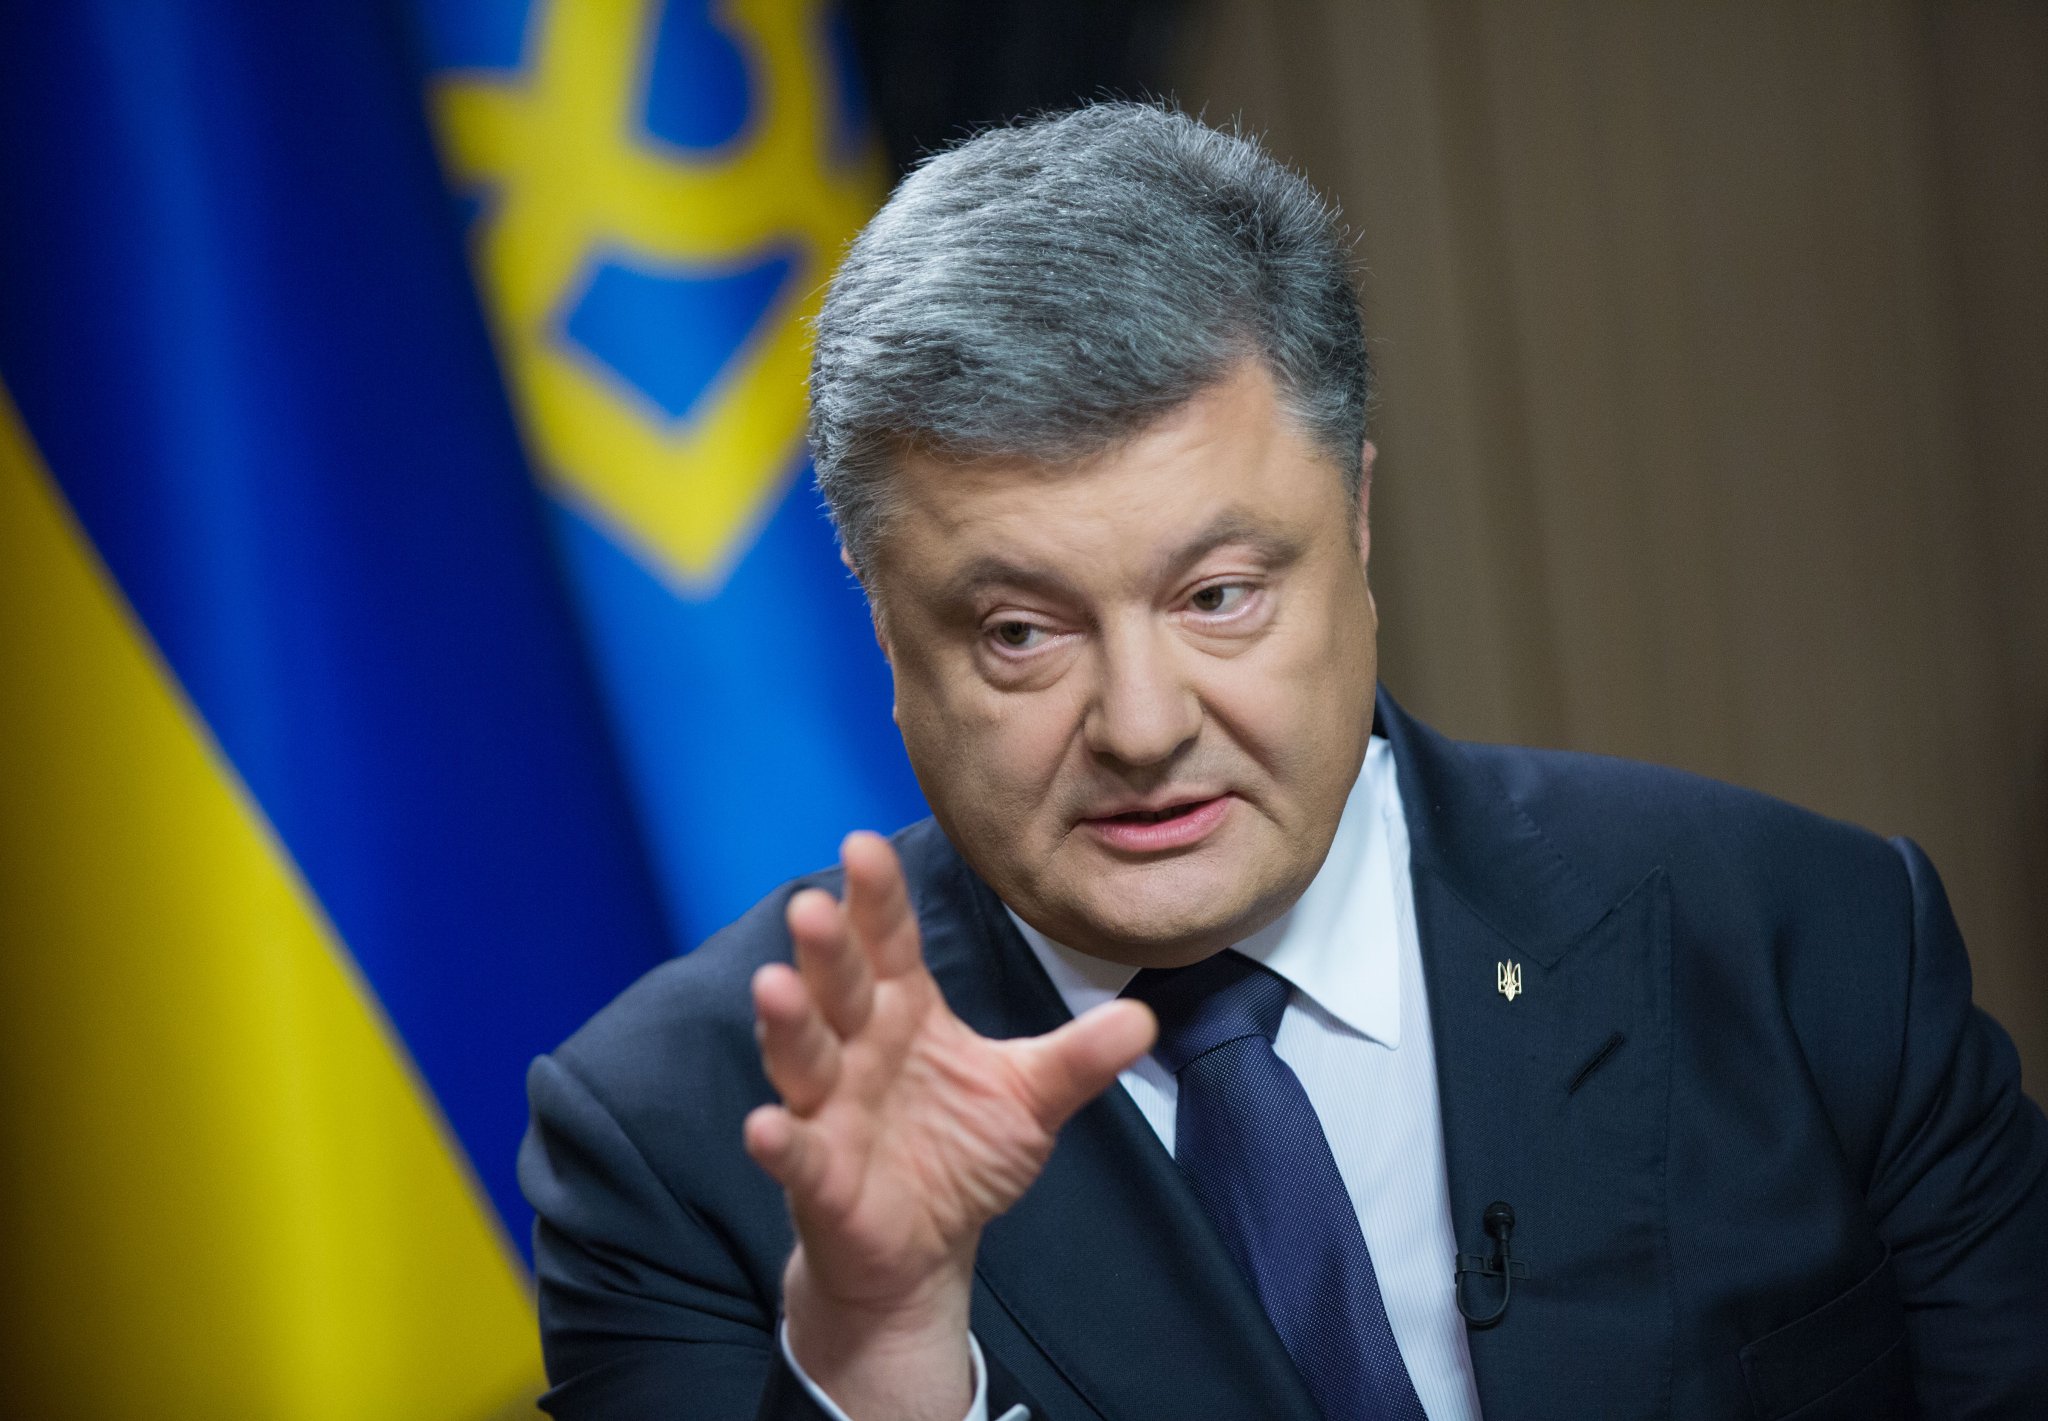 "Политиканы уничтожили возможность вернуть ОРДЛО в Украину": Порошенко рассказал, что не отдаст Путину Донбасс и "не примет" закон про оккупированные земли